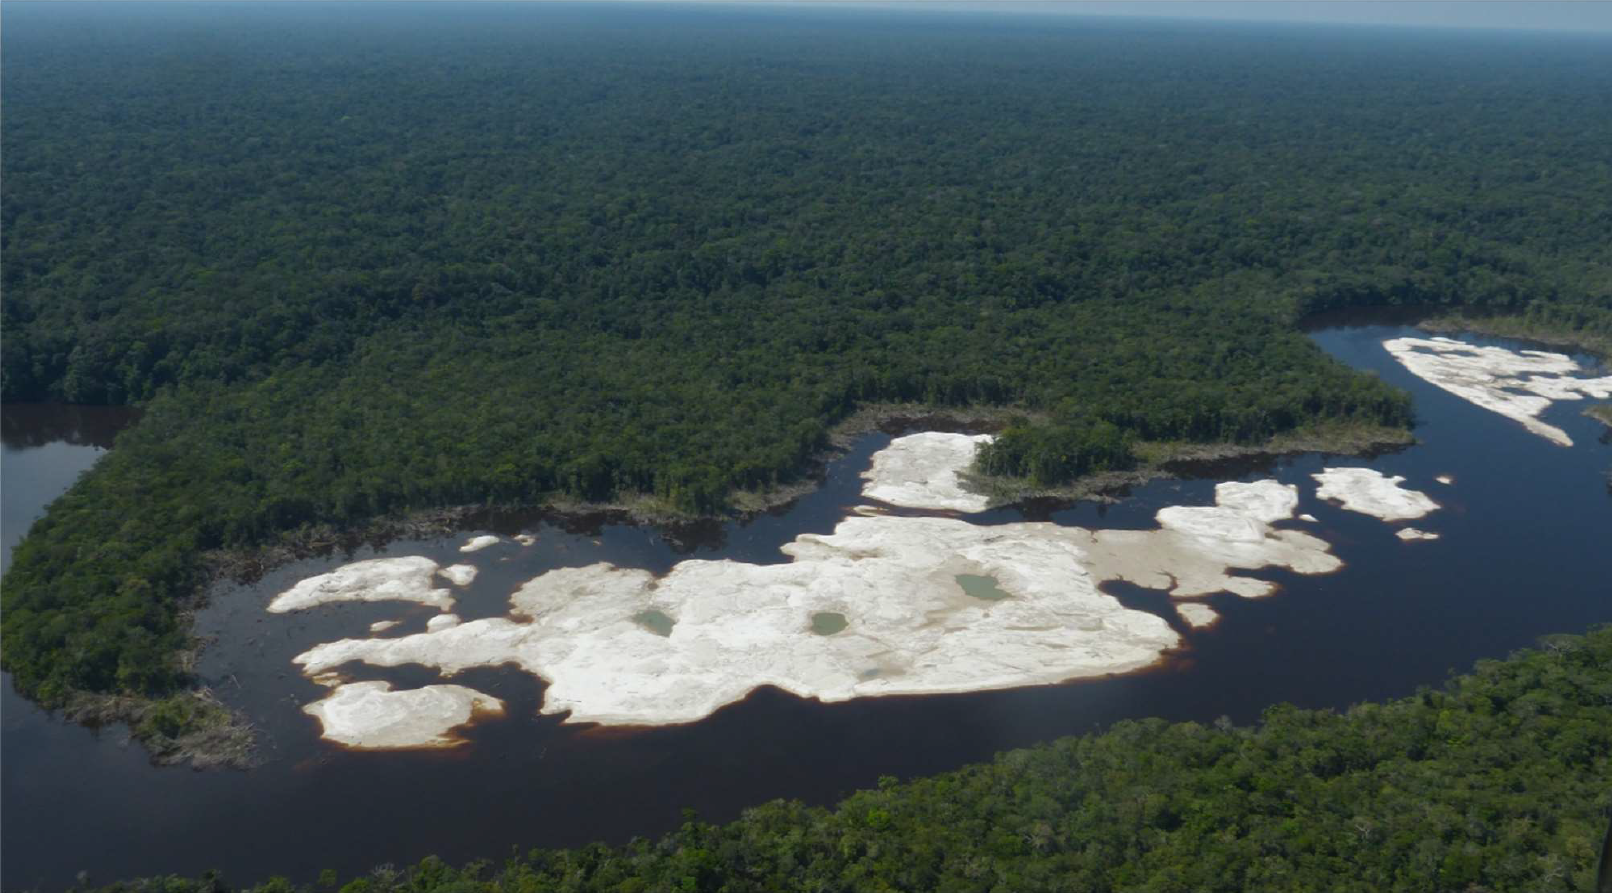 Minería artesanal ilegal crece desde hace 3 años en estación ecológica amazónica en la frontera con Colombia